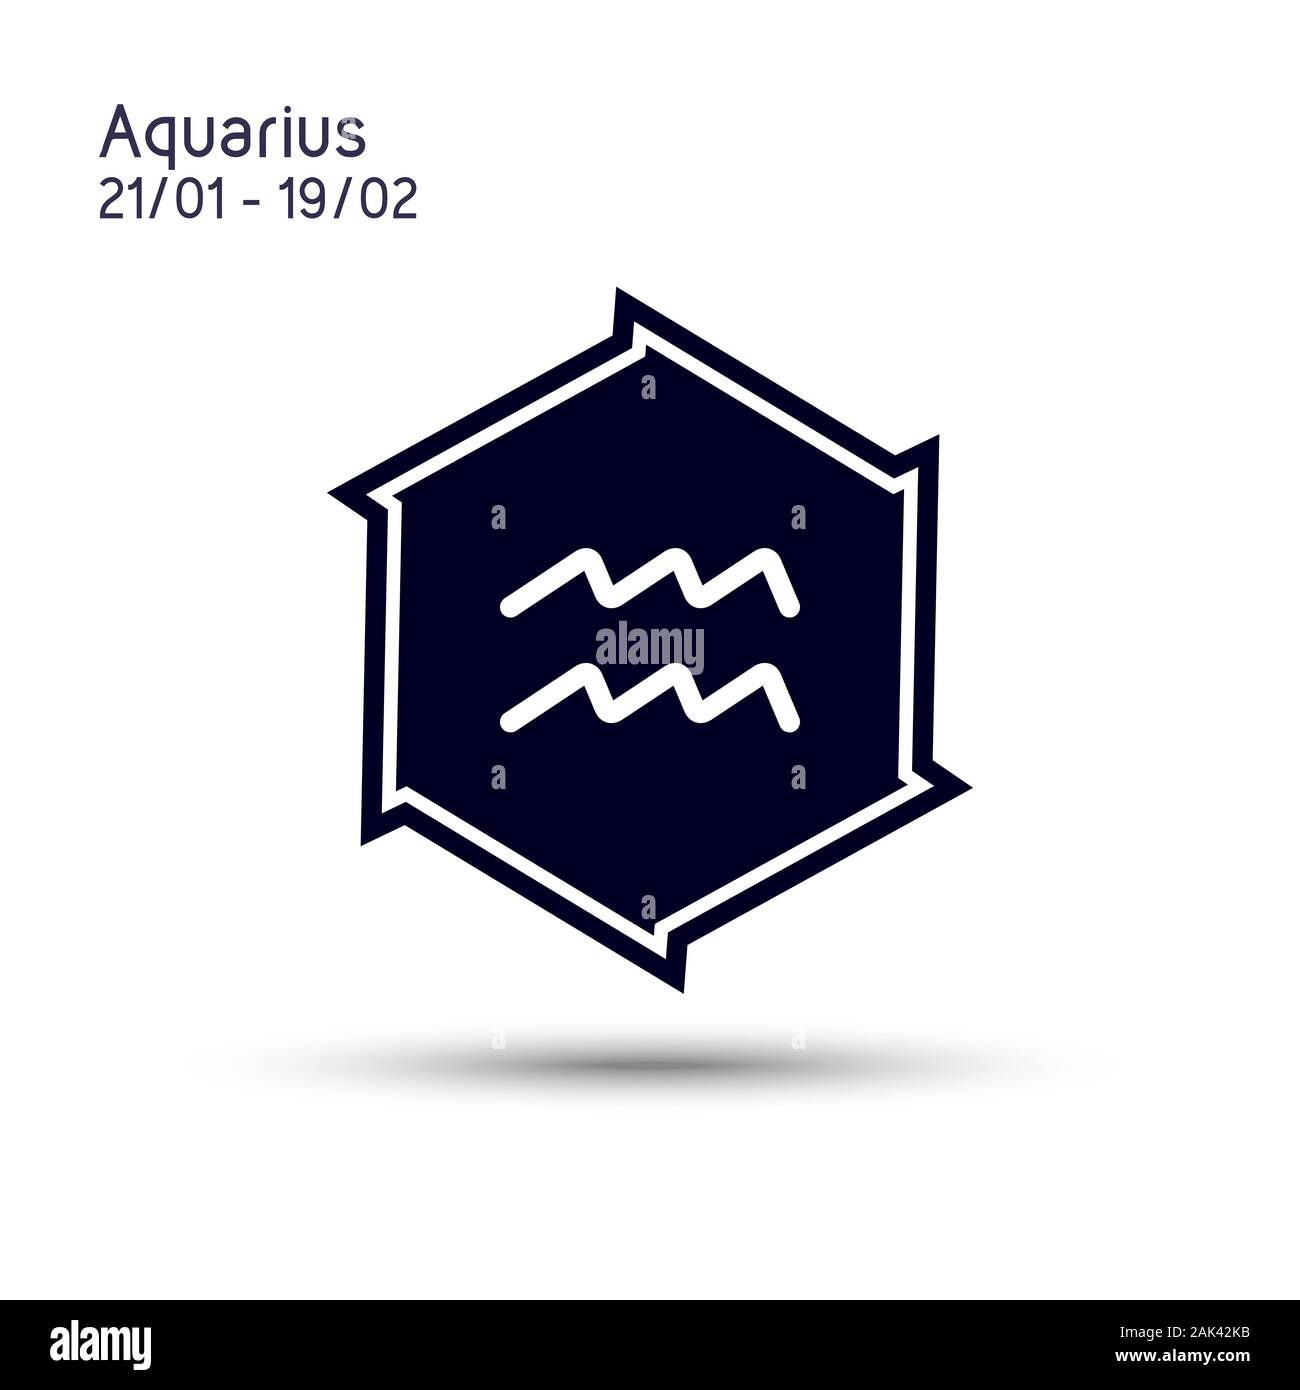 Abstraktes Bild des Zodiac symbol Aquarius in einem Sechszackigen Stern für mobile Konzept und Webdesign. Spitz abgeschrägt Stern. Astrologie symbol Vektor il Stock Vektor